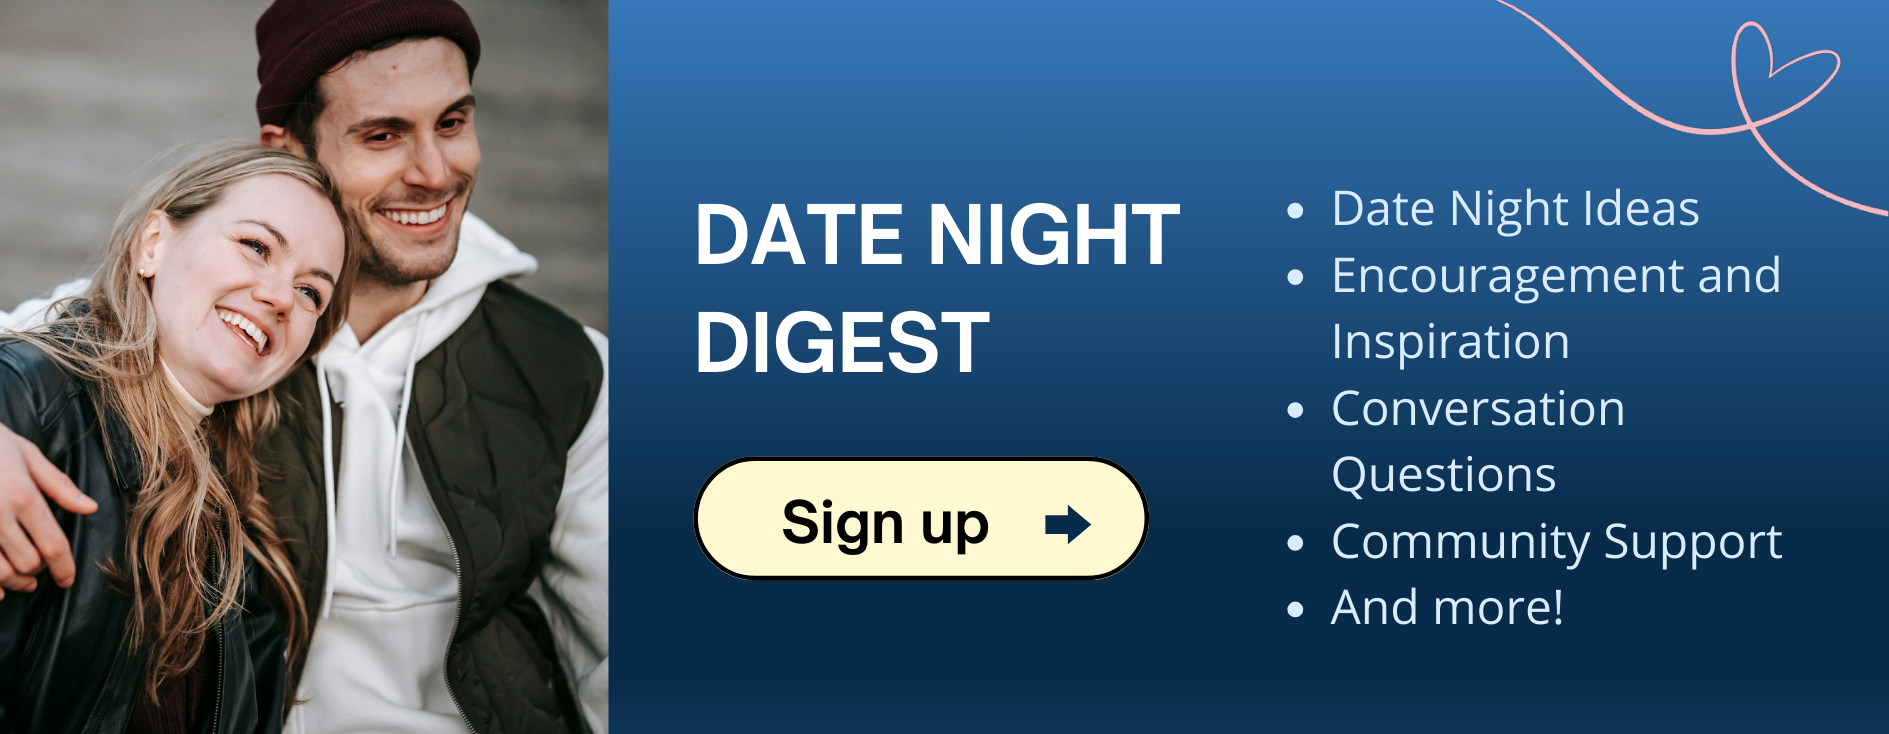 Date Night Digest 4